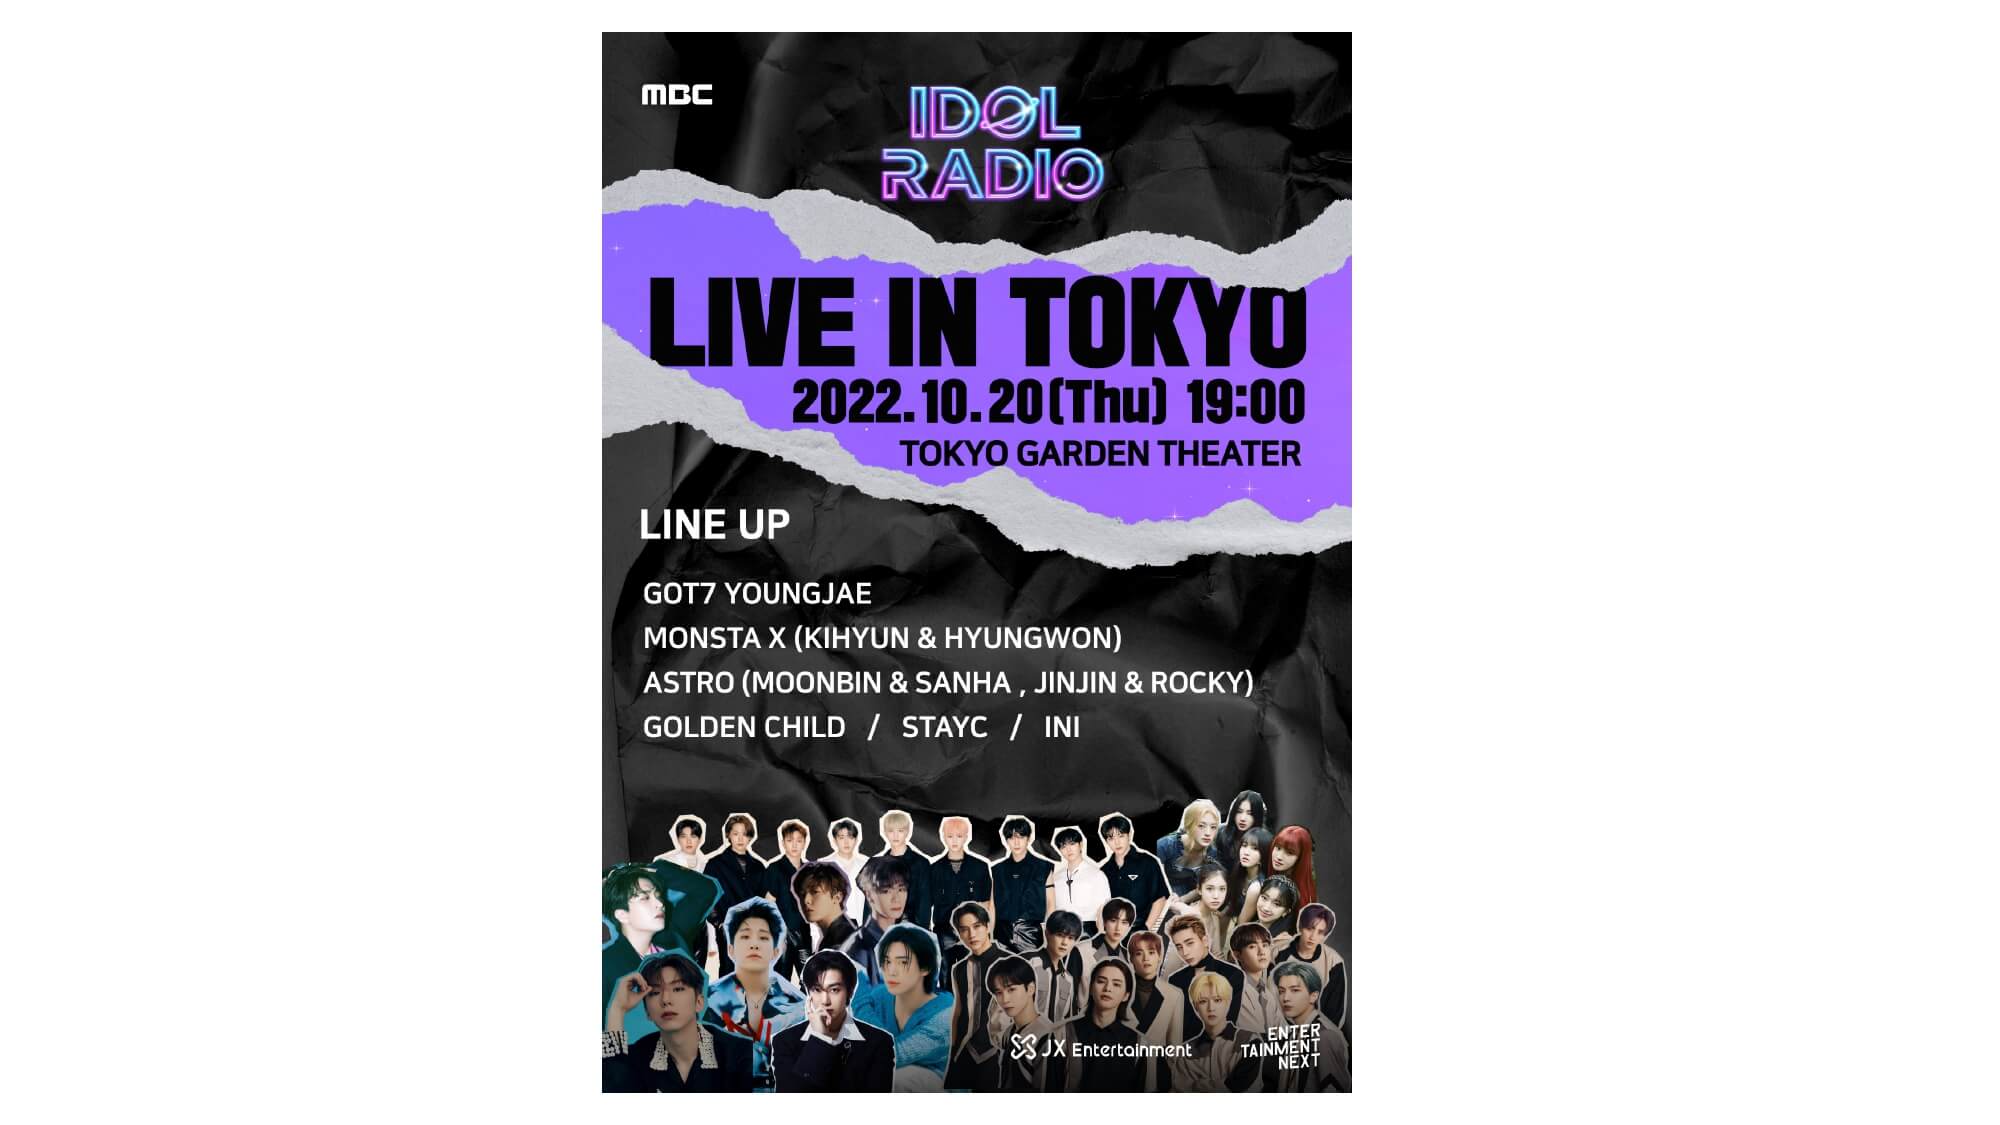 日本初開催となるK-POP専門ラジオ番組のライブイベント『MBC IDOL RADIO LIVE in TOKYO』、Birdman子会社のEntertainment Nextにて主催が決定